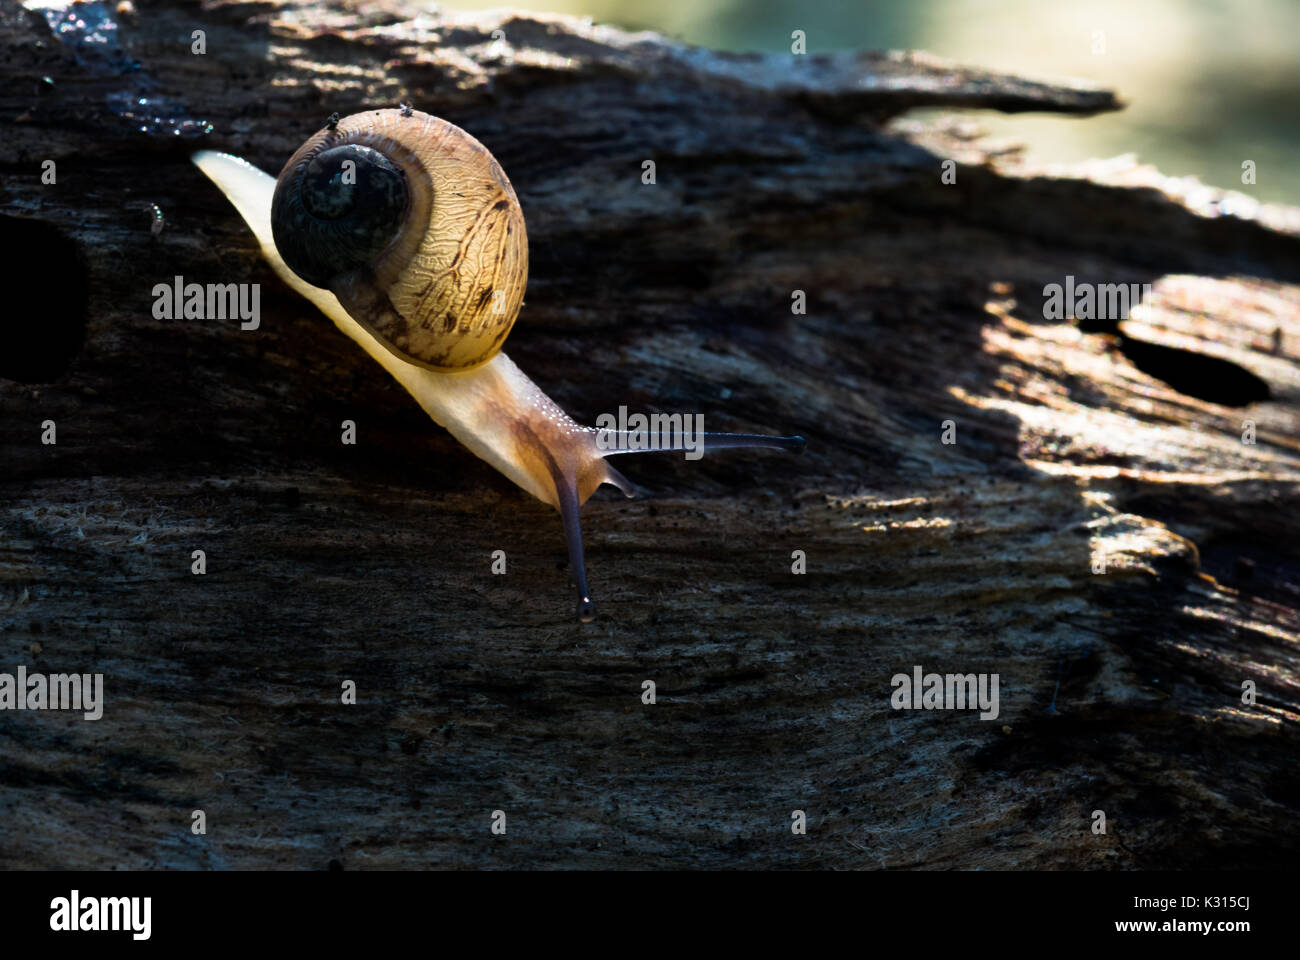 Ein Land snail Wandern auf einem Baumstamm, Schleim hinter sich. Shell semi transparent zurück von morgen Sonnenstrahlen beleuchtet, die Muster der Spirale Shell. Stockfoto